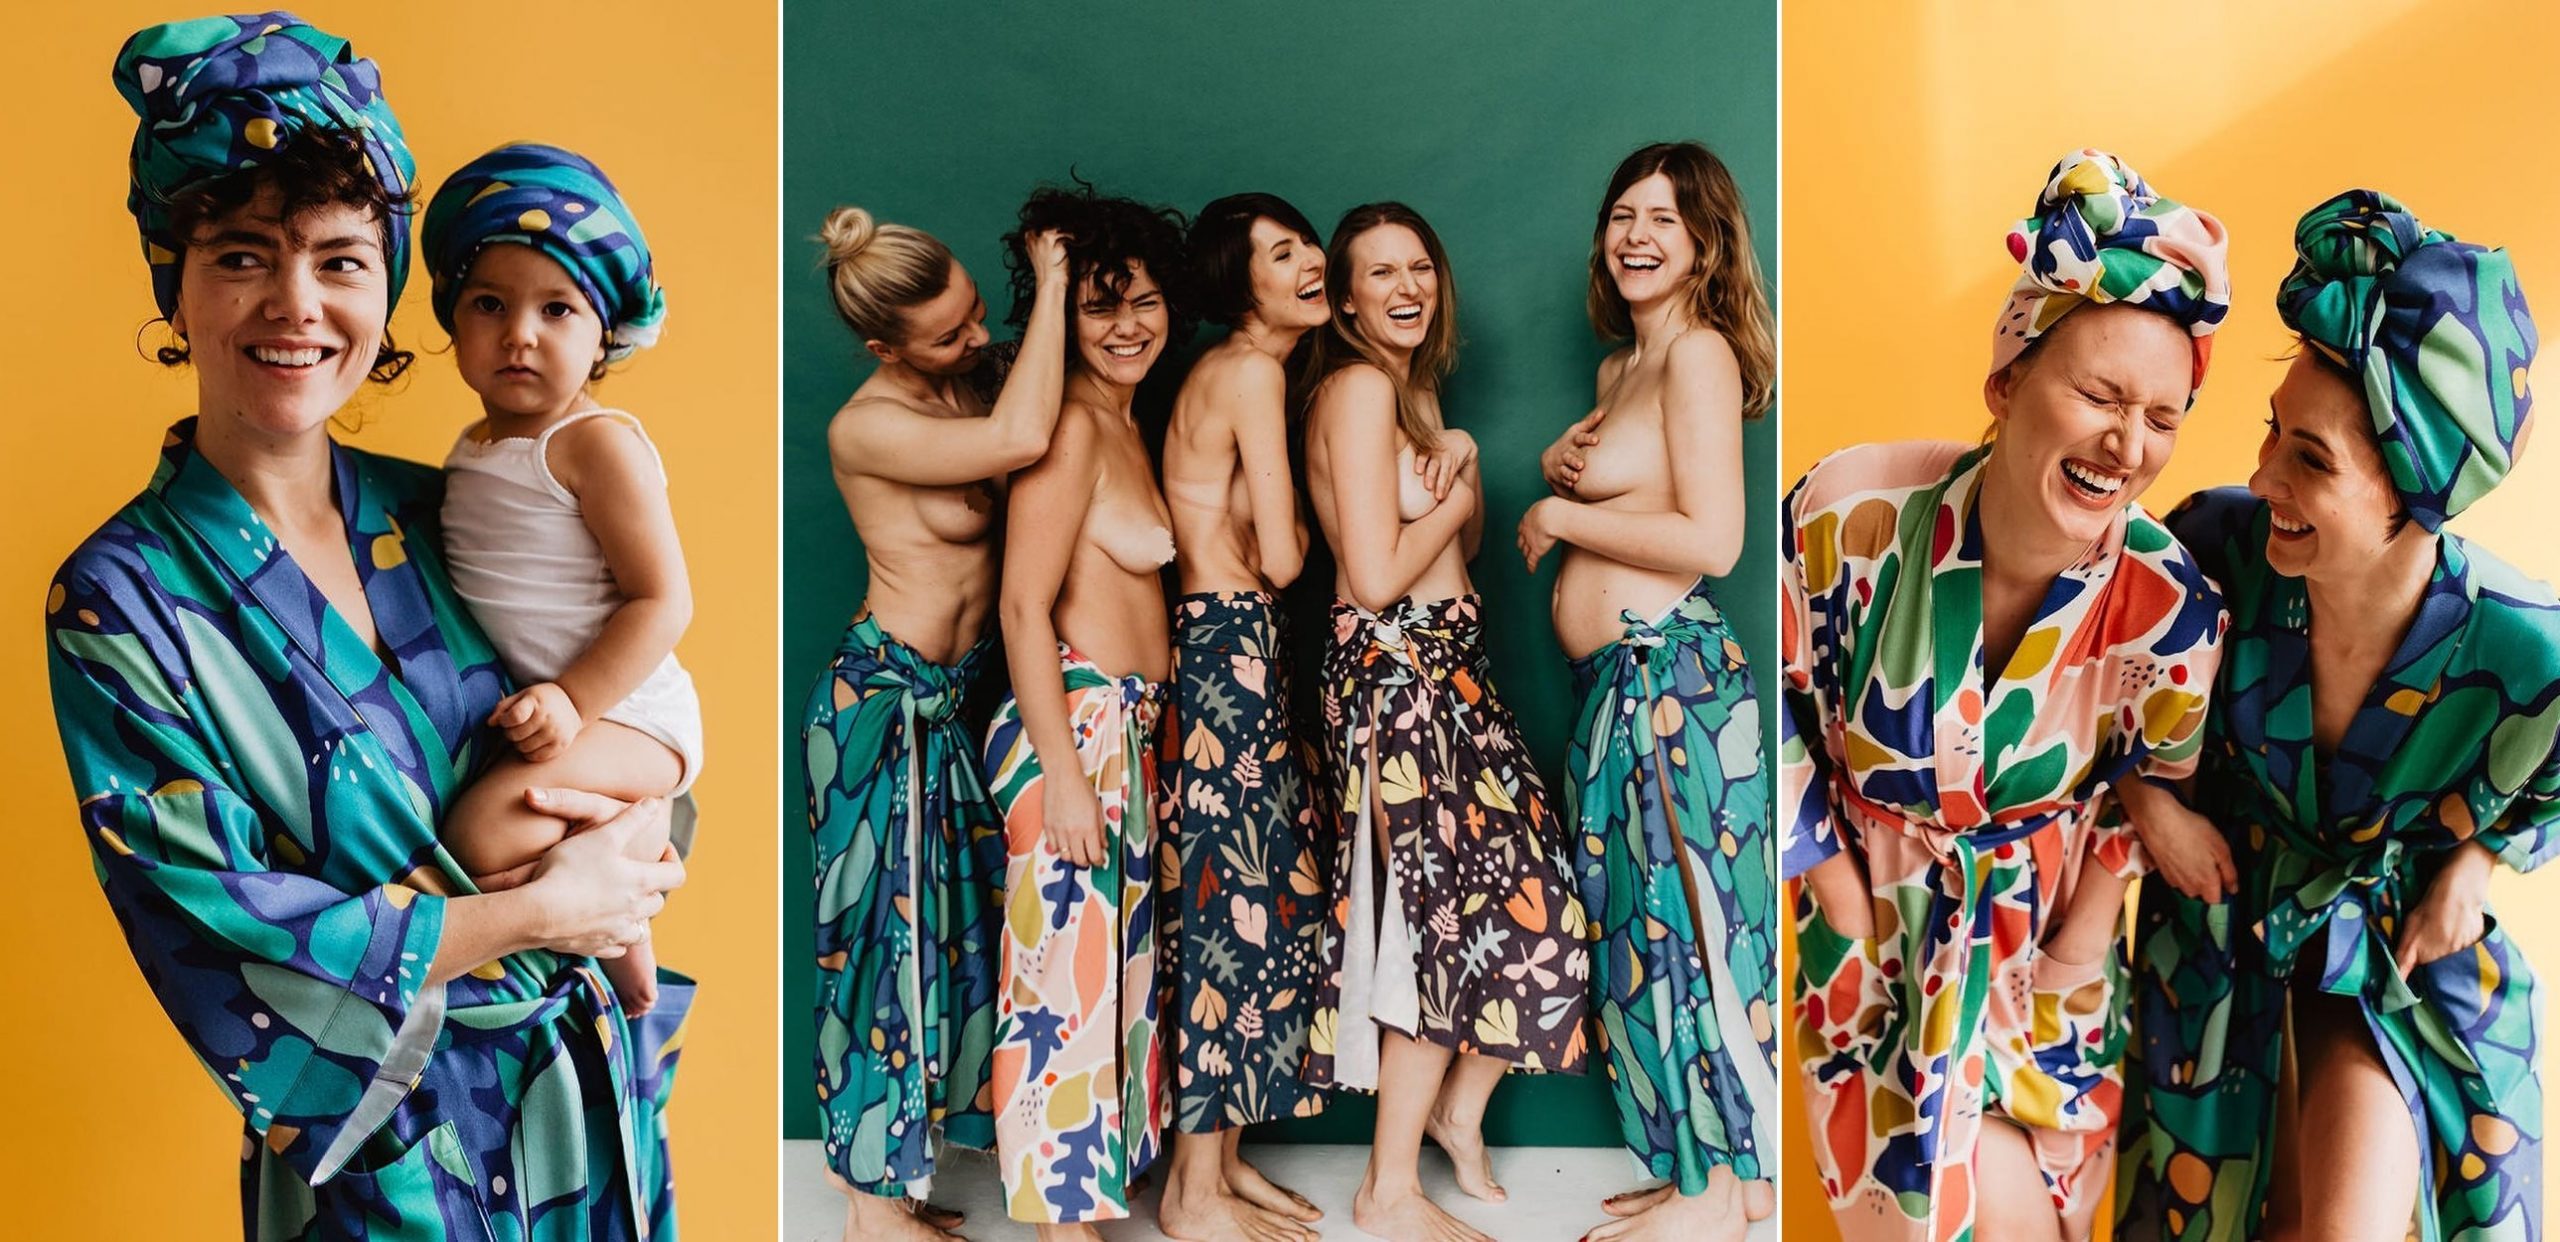 Zachwycająca kampania polskiej marki. Yellow Meadow prezentuje kobiety w całkowicie naturalnej odsłonie. Zobacz najbardziej kobiece szlafroki i otulacze na świecie